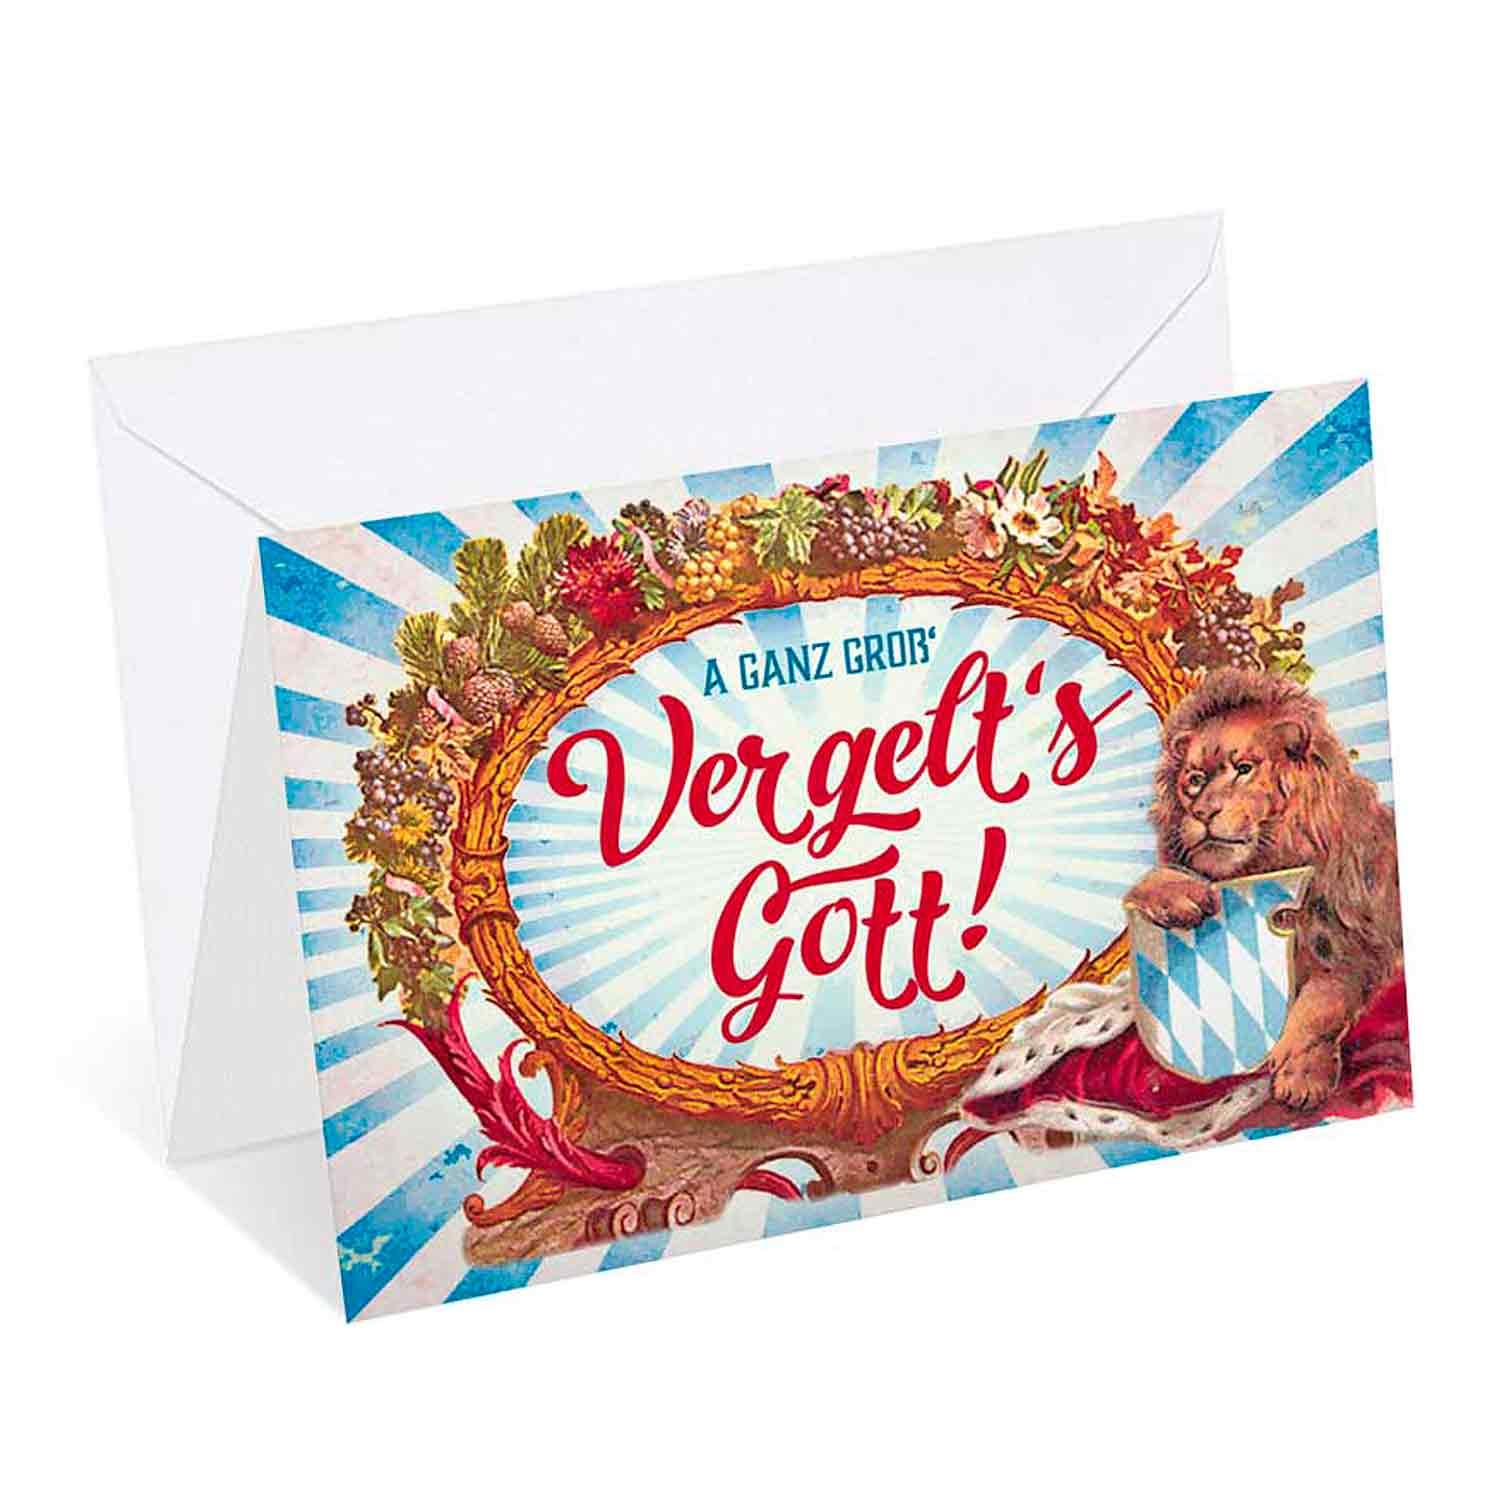 Dankeskarte "Vergelt's Gott" - bavariashop - mei LebensGfui